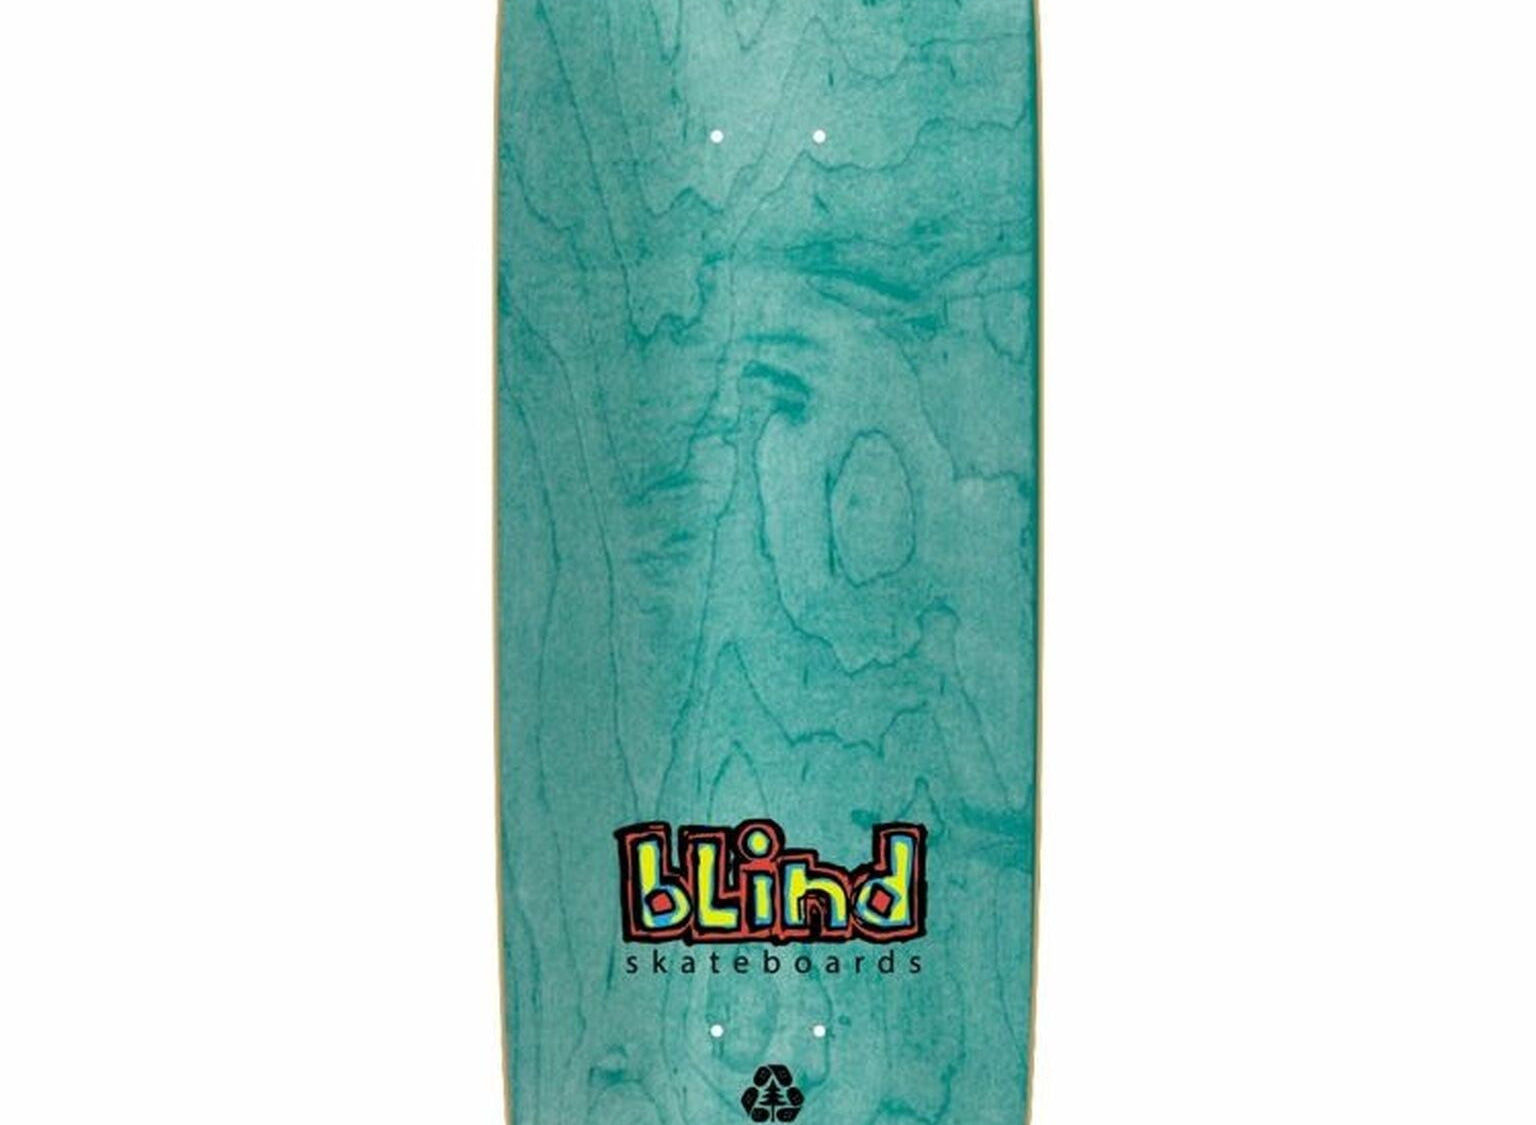 Blind Ilardi Reaper Impersonator Deck 9.625" - SkateTillDeath.com